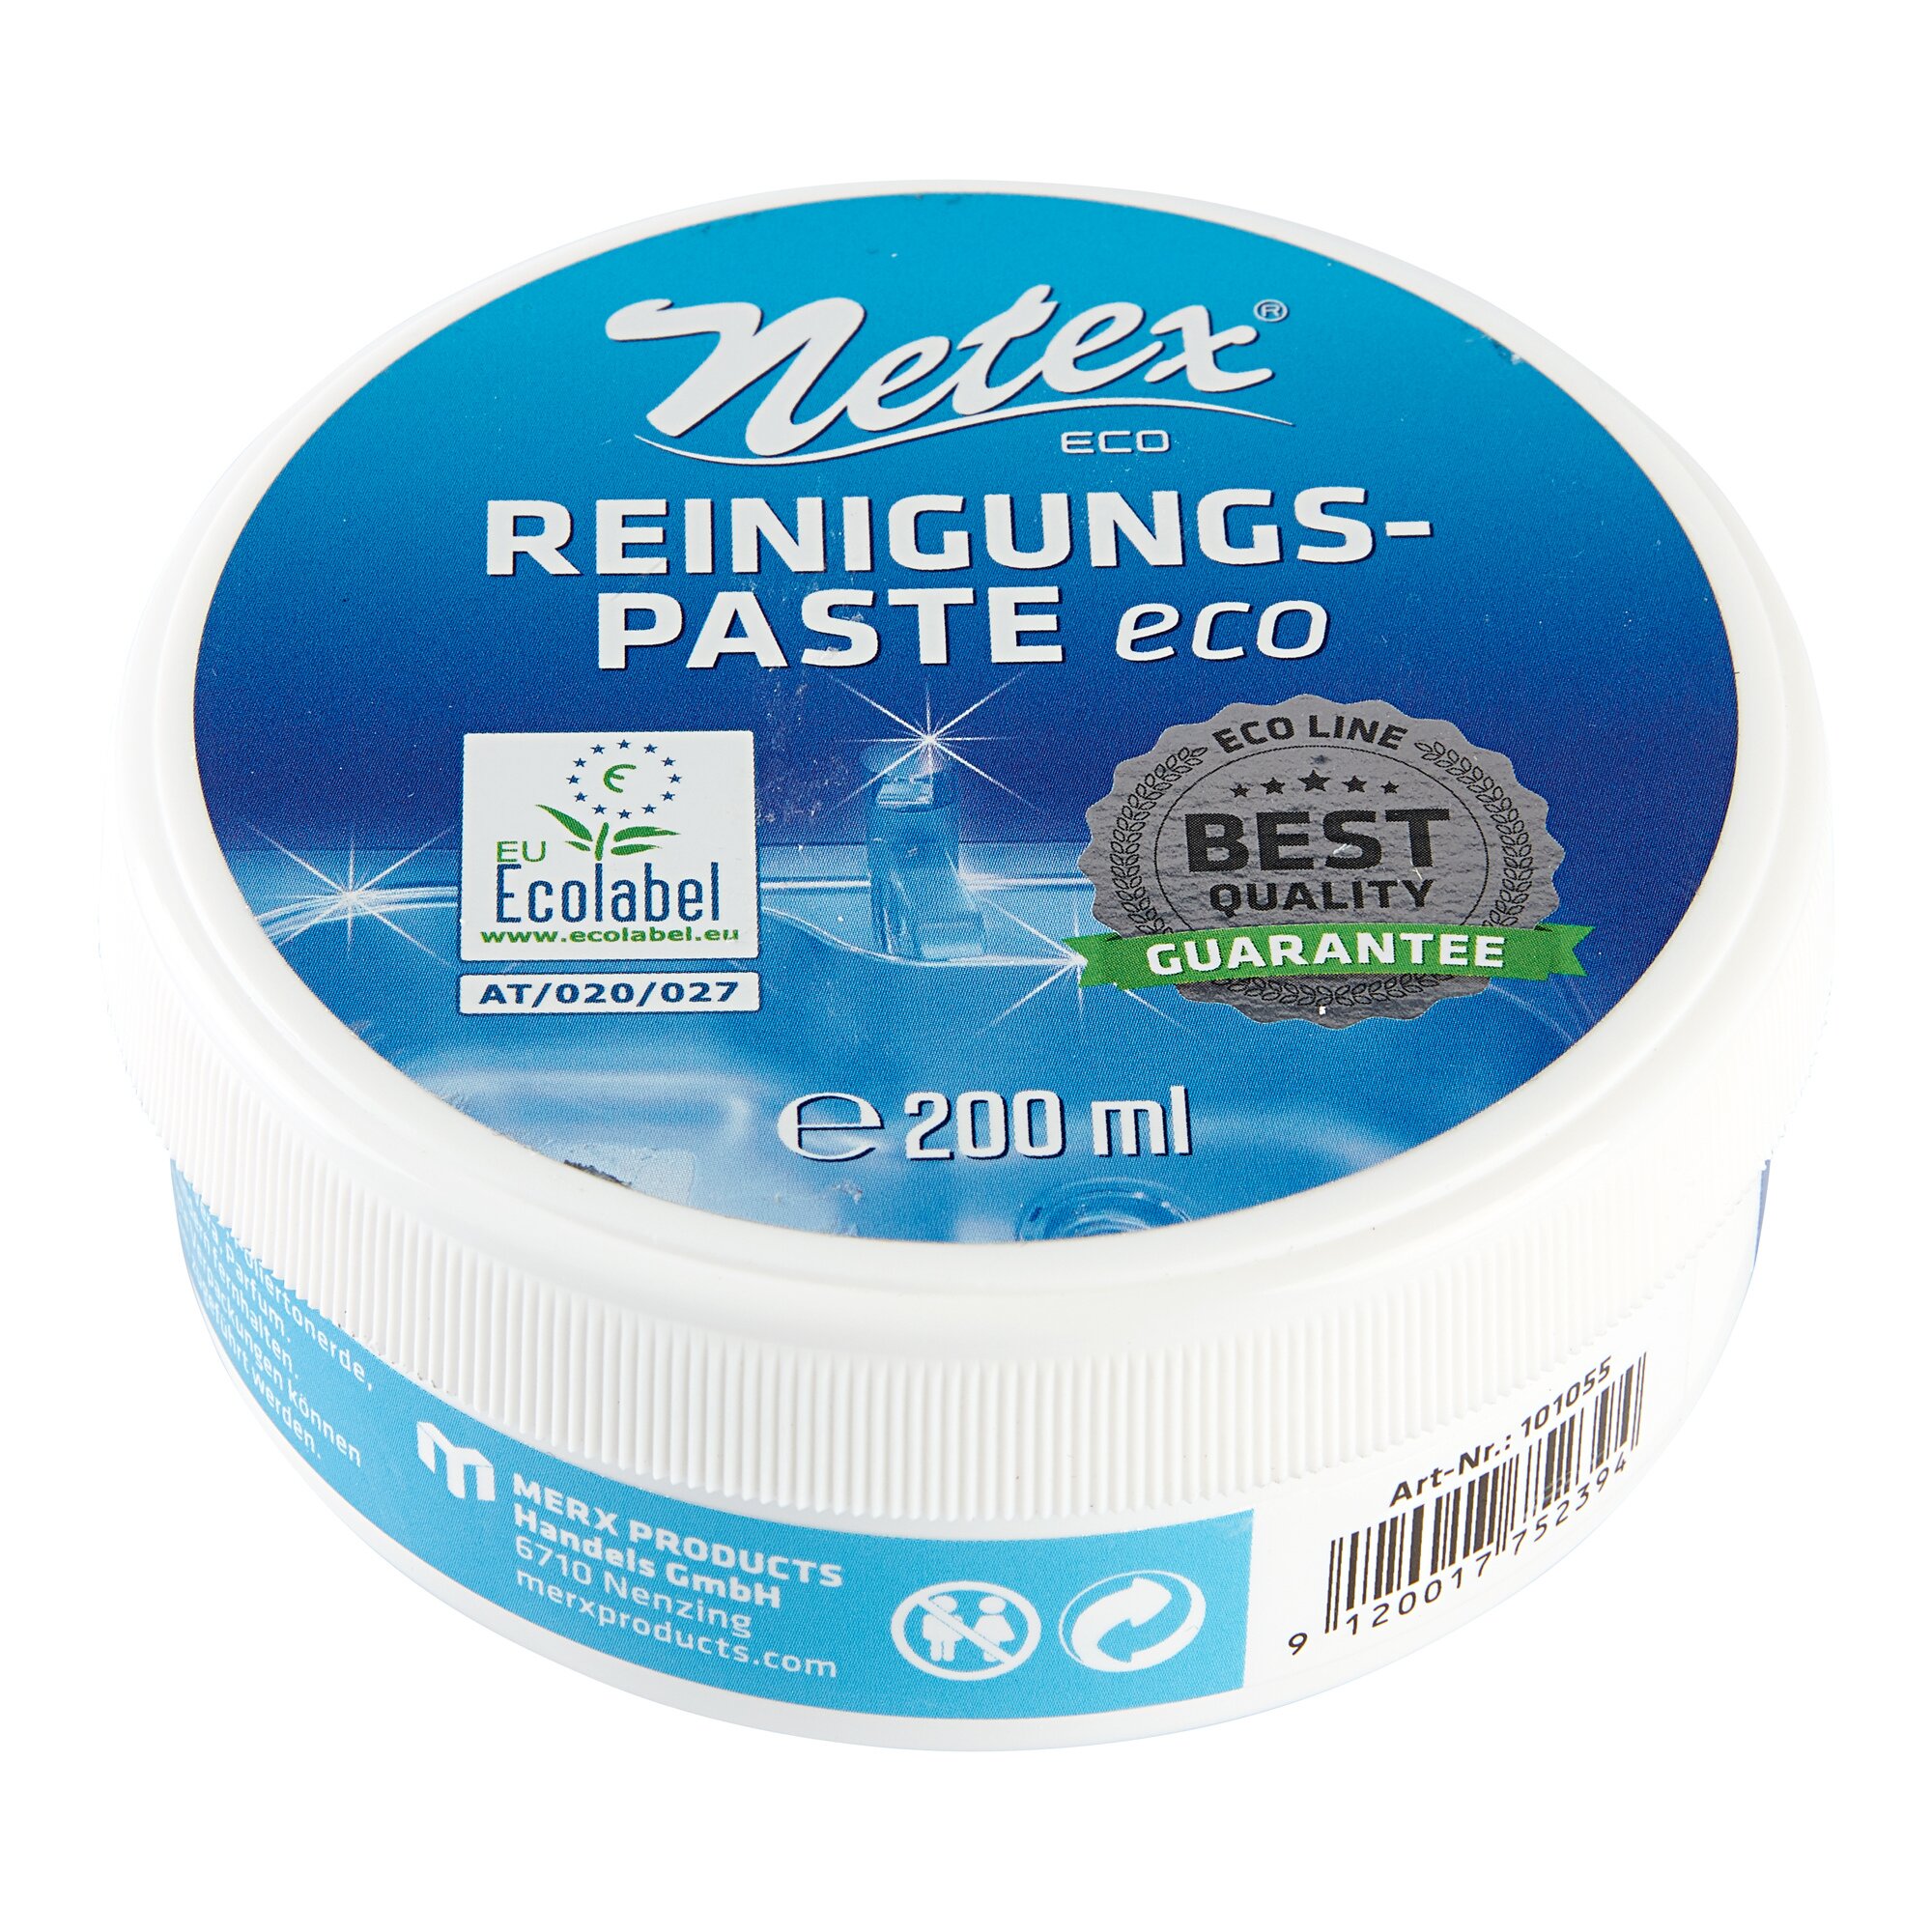 Reinigungspaste Eco, 200 ml